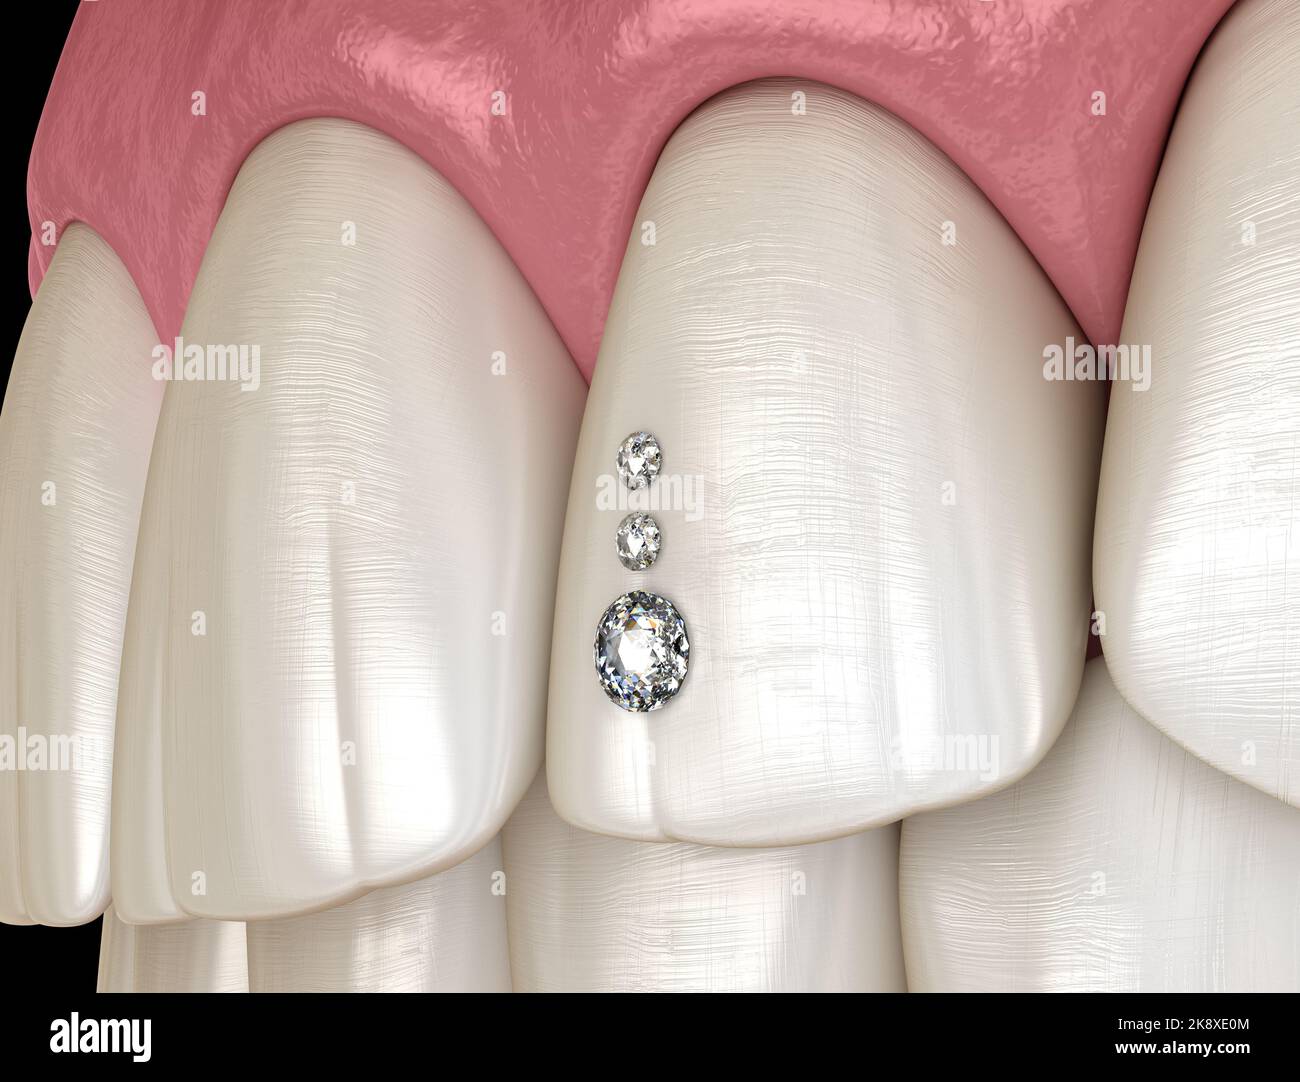 3 x gemas de dientes belleza diamante Dental cristal diente joyería adornos